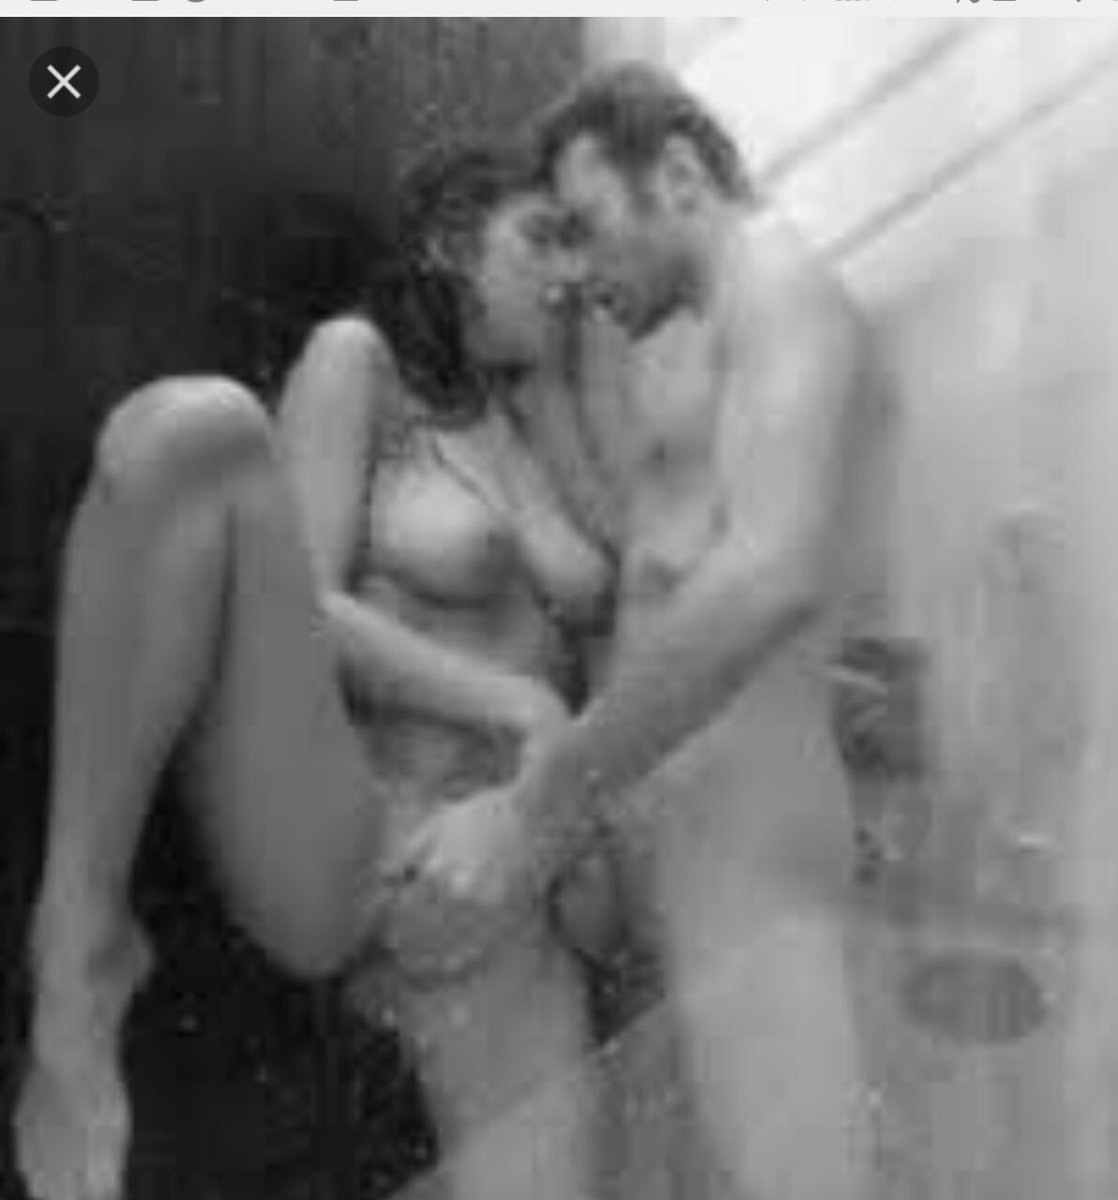 муж и жена моются в душе порно фото 63